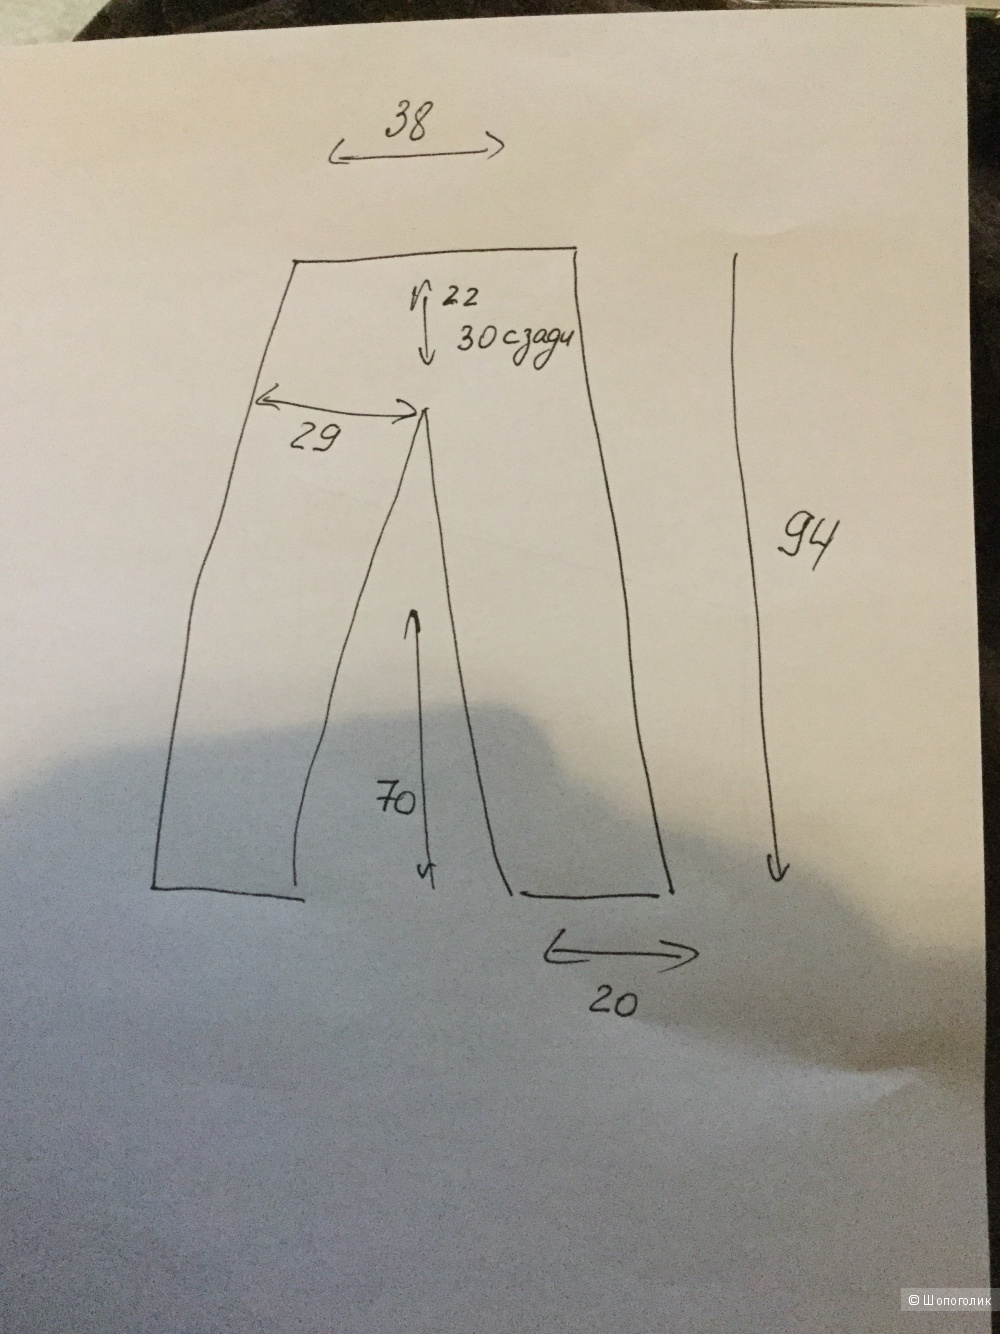 Льняные брюки Esprit 42-44